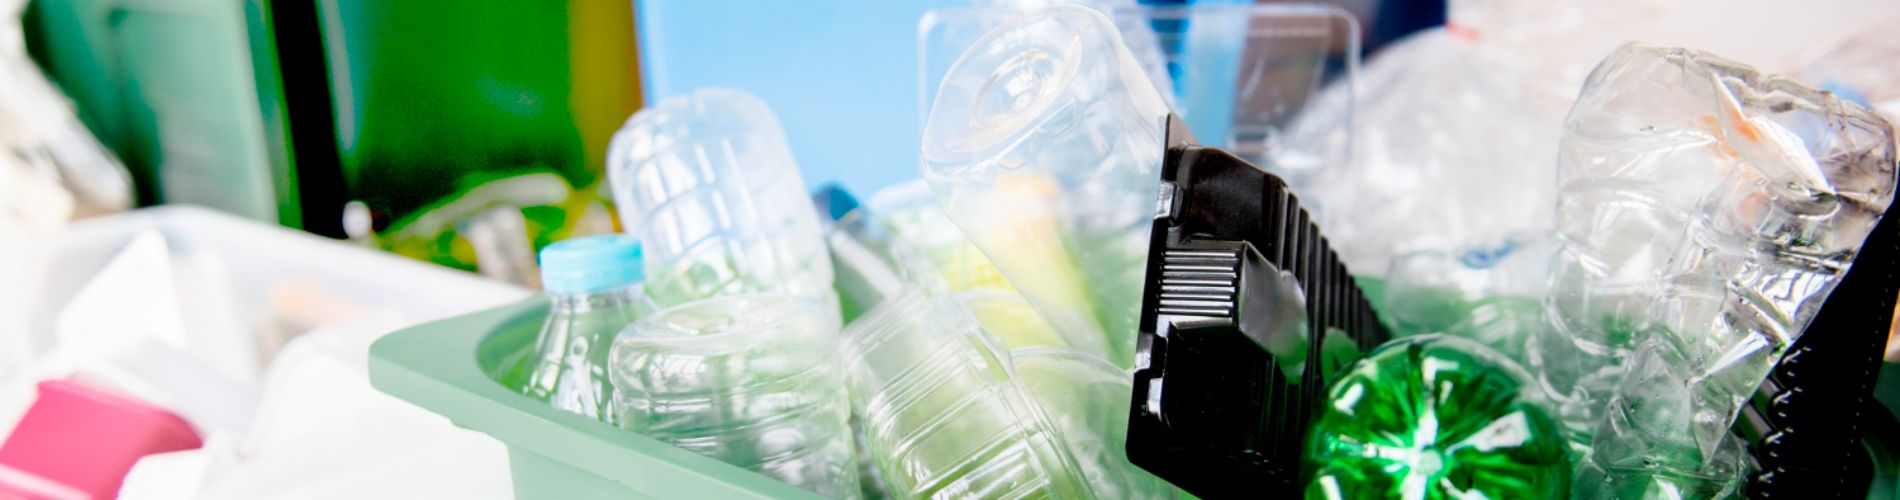 bottiglie-di-plastica-usate-nei-cassonetti-per-il-riciclaggio-per-la-campagna-della-giornata-della-terra